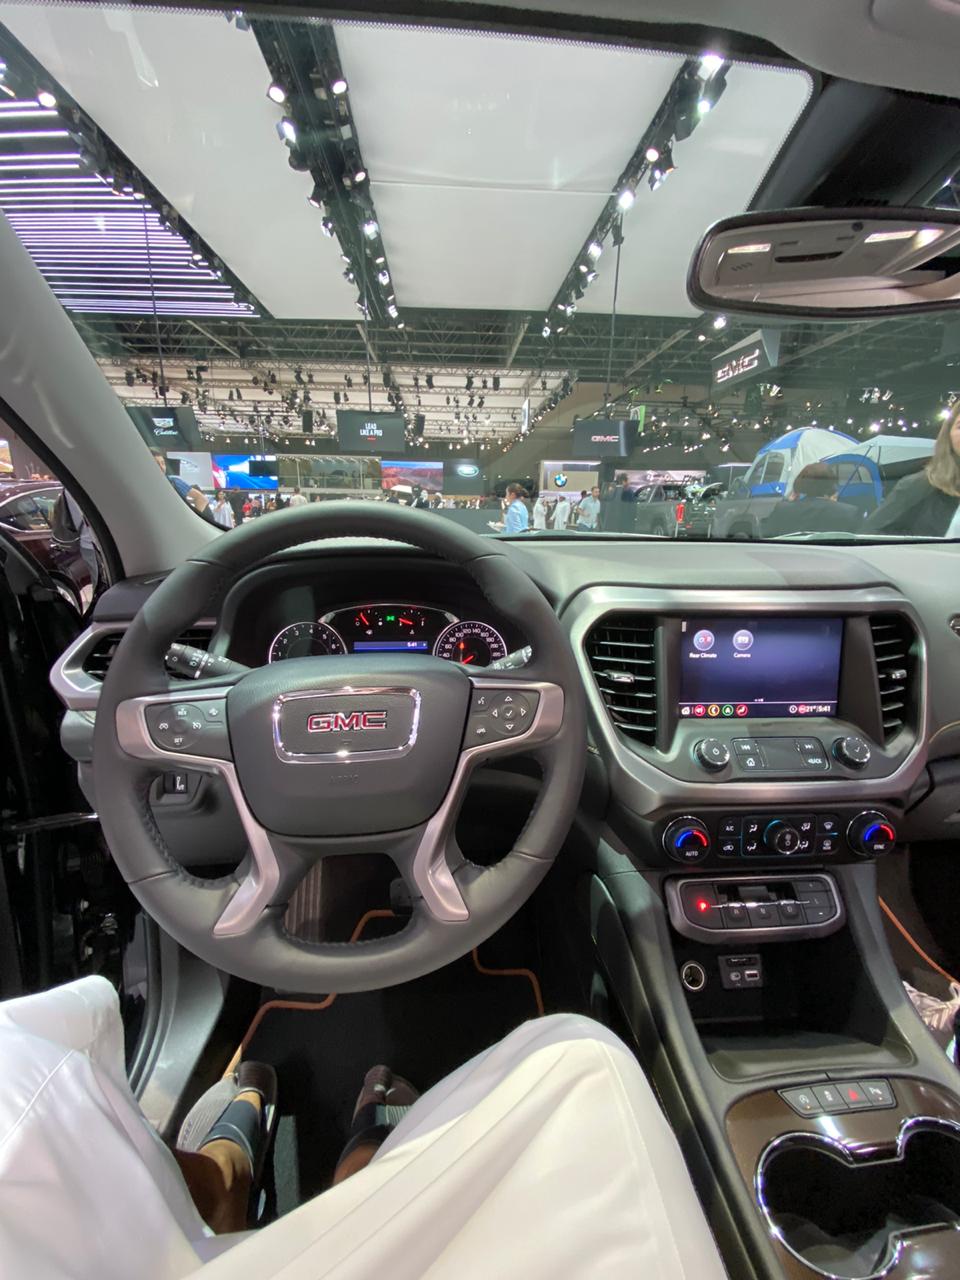 جي ام سي تستعرض اكاديا وسييرا 2020 في معرض دبي الدولي للسيارات 10